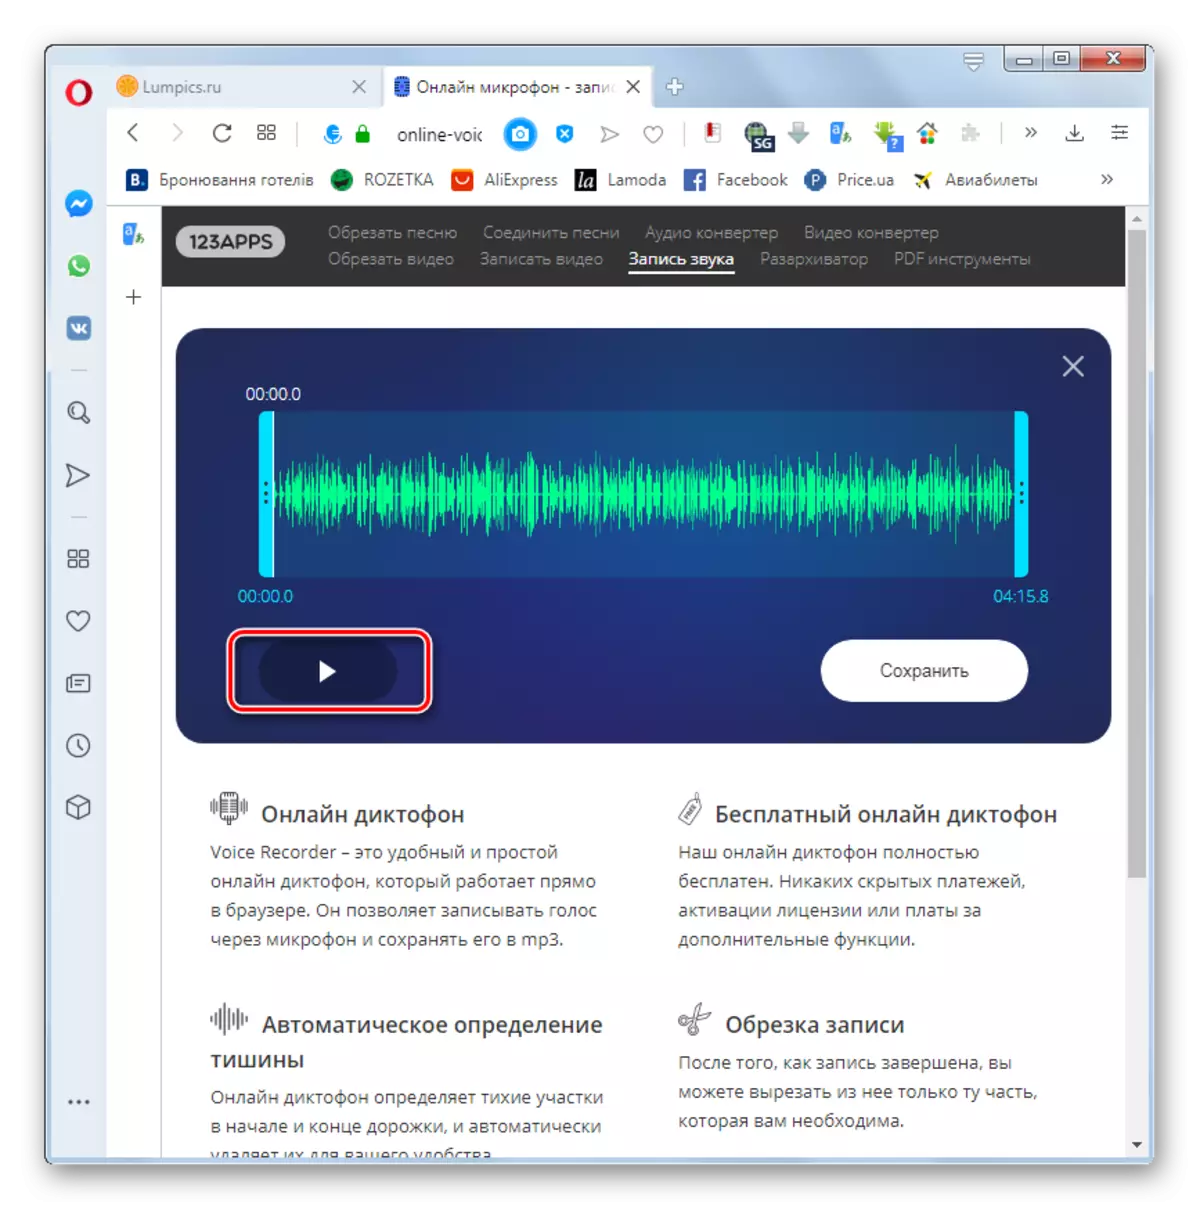 ओपेरा ब्राउजरमा अनलाइन-पोज-रेकर्डर वेब सेवामा रेकर्ड गरिएको आवाजको प्लेब्याक चलाउनुहोस्